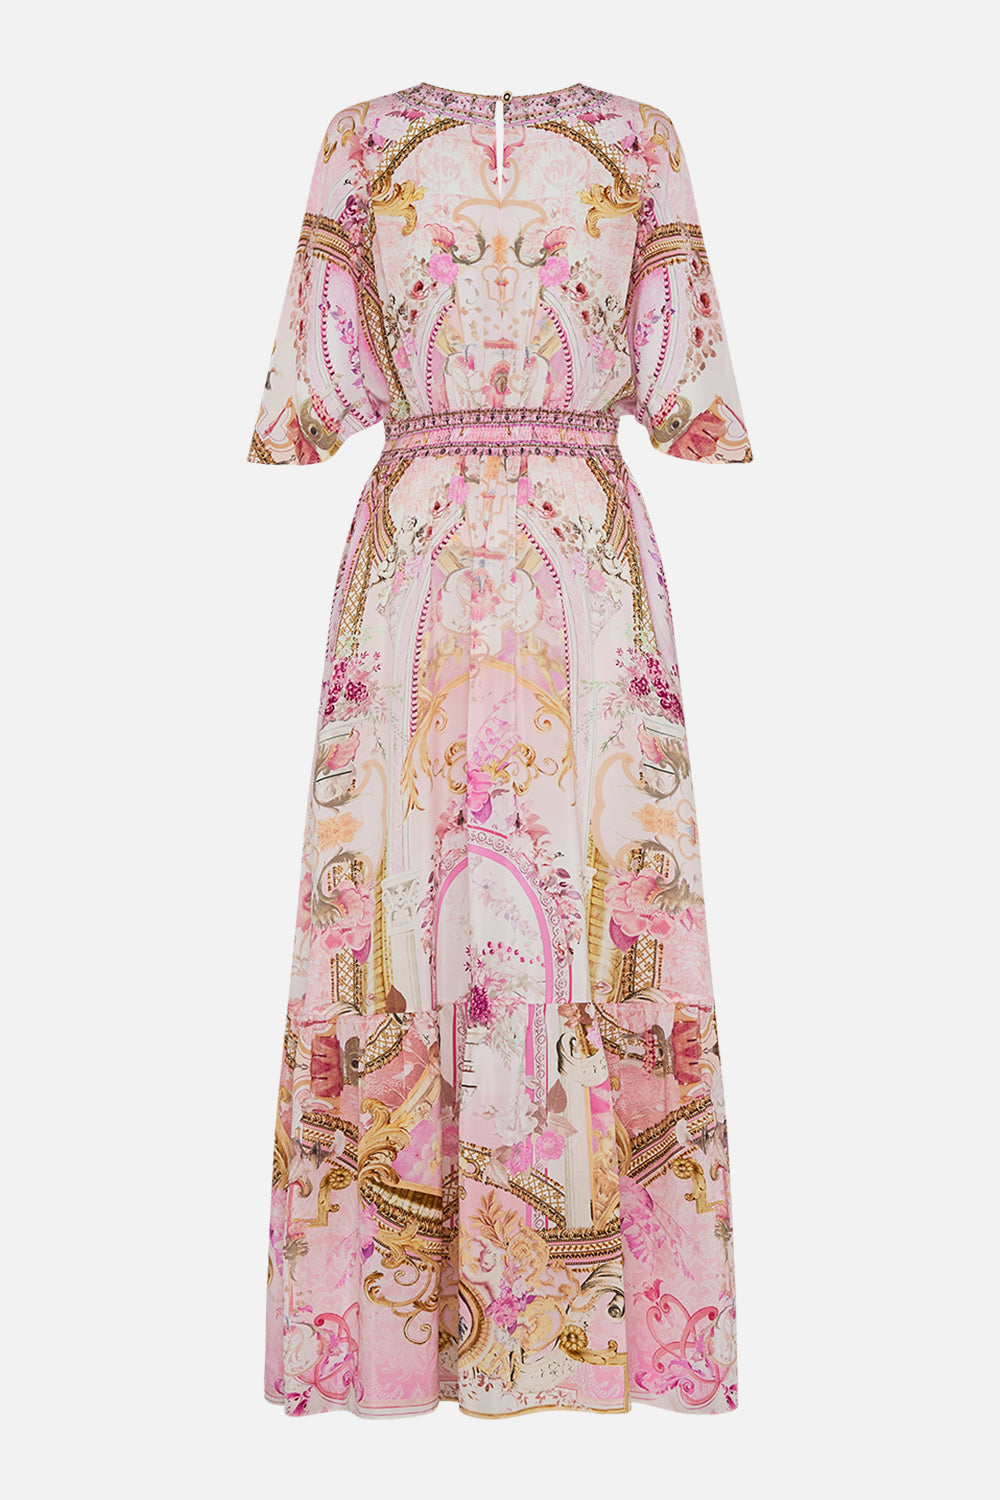 Detail view of model wearing pink silk ruffle dress in Fresco Fairytale print